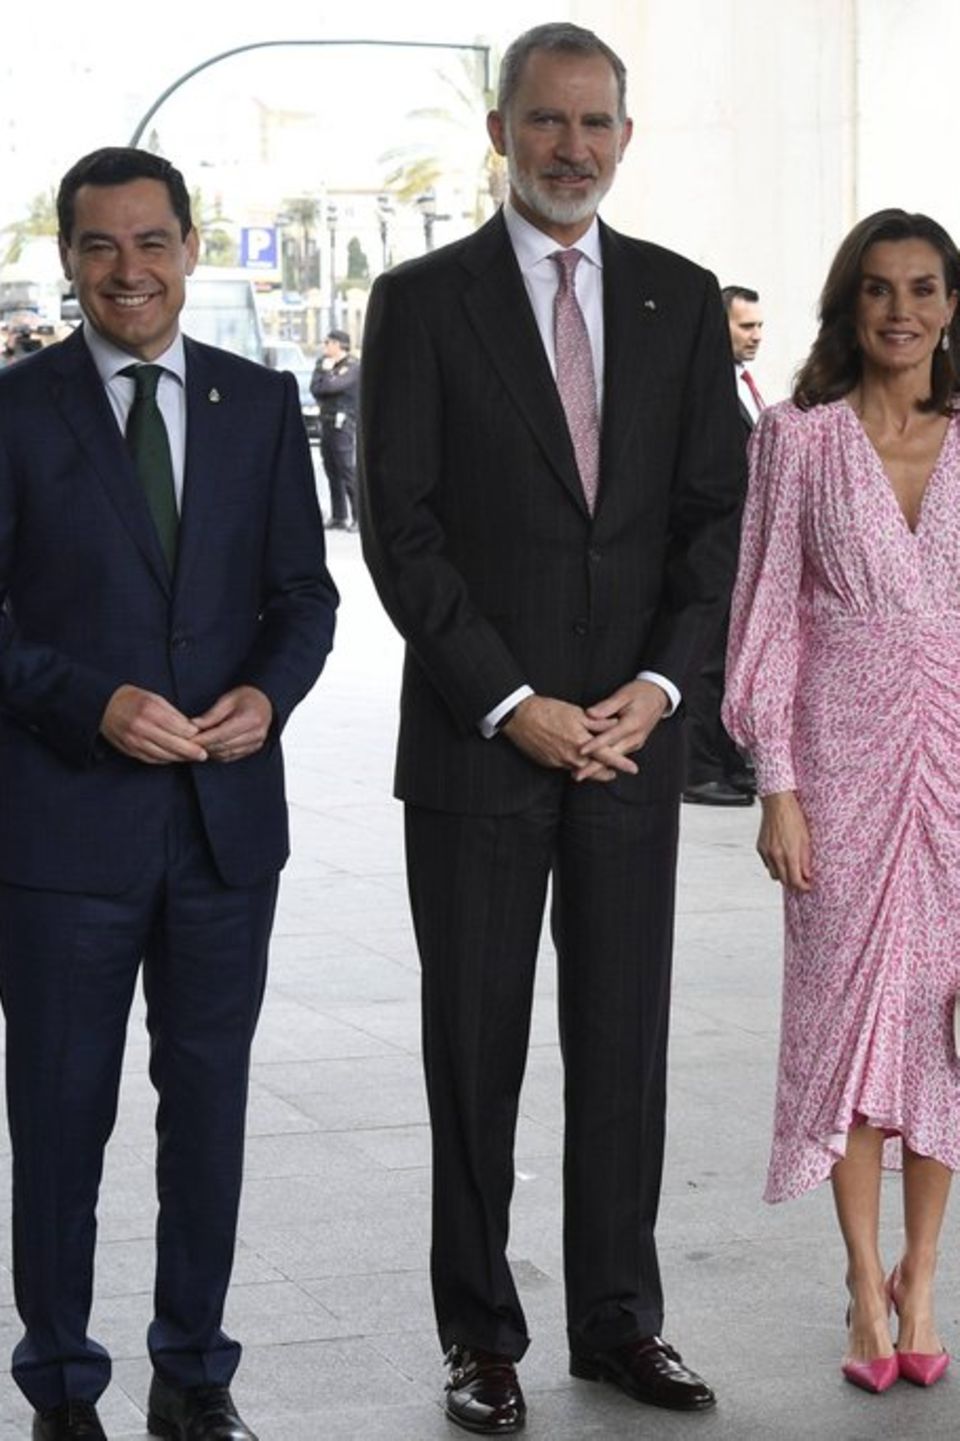 Königin Letizia von Spanien an der Seite ihres Mannes, König Felipe, bei der Verleihung von Medaillen an Kunst- und Kulturscha